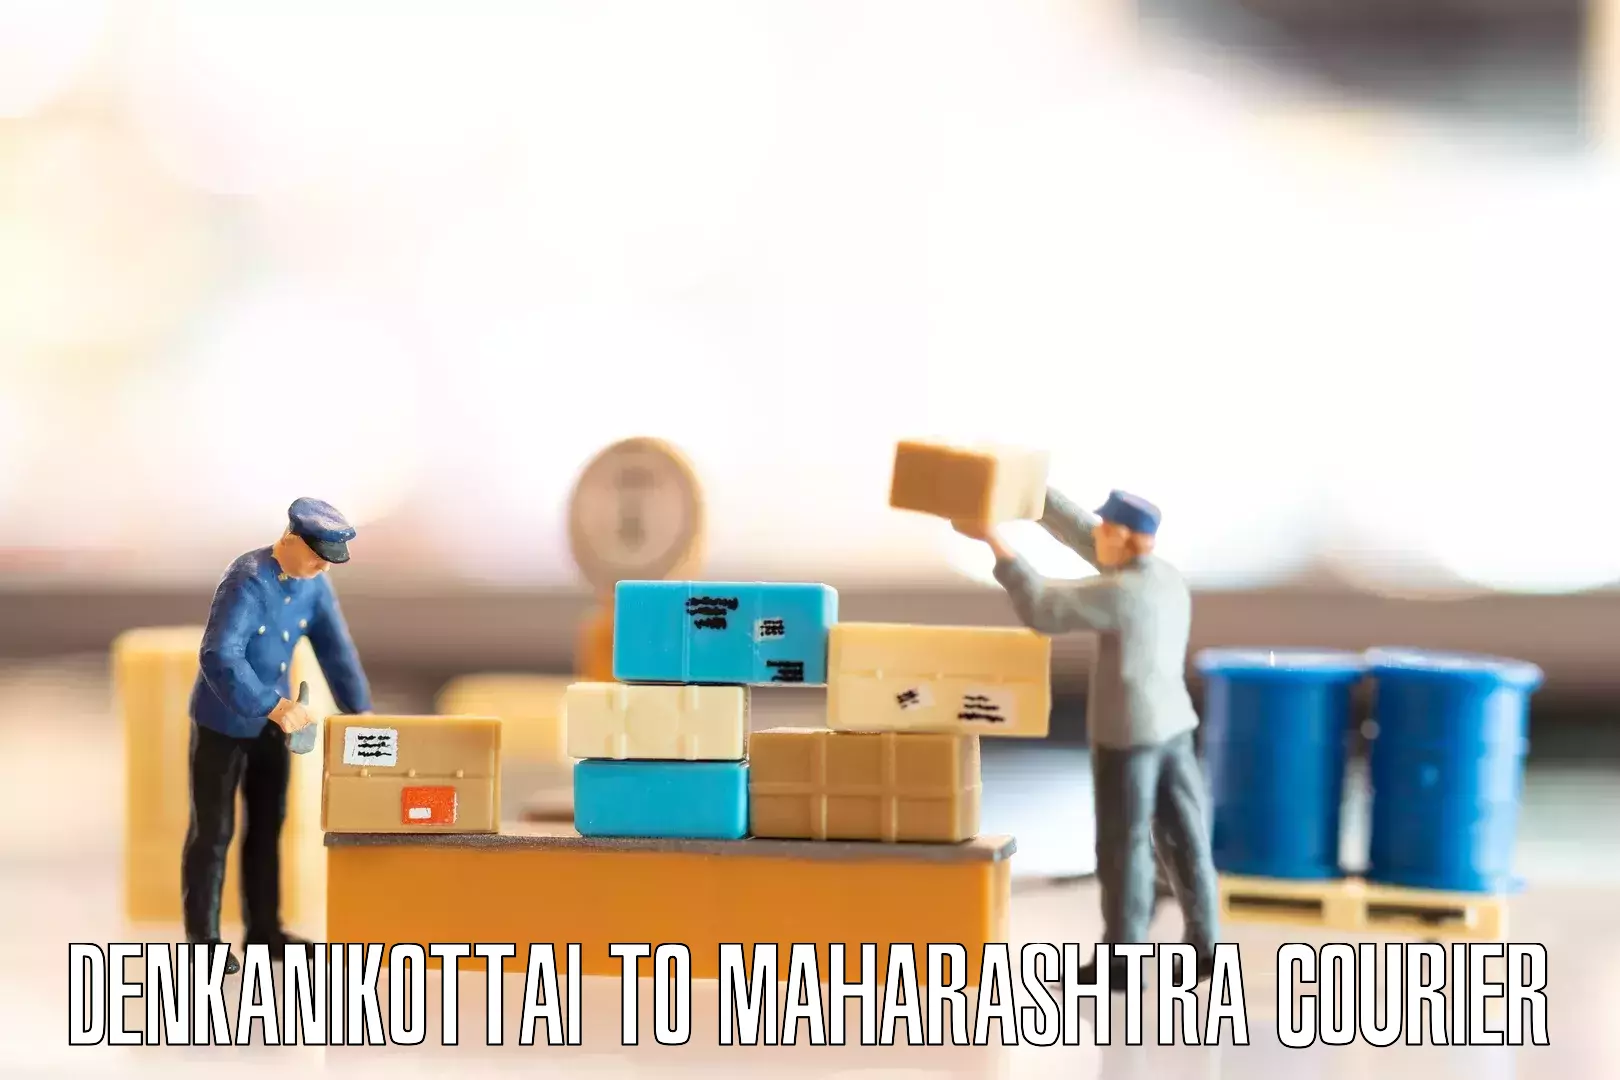 Quality moving company Denkanikottai to Maharashtra